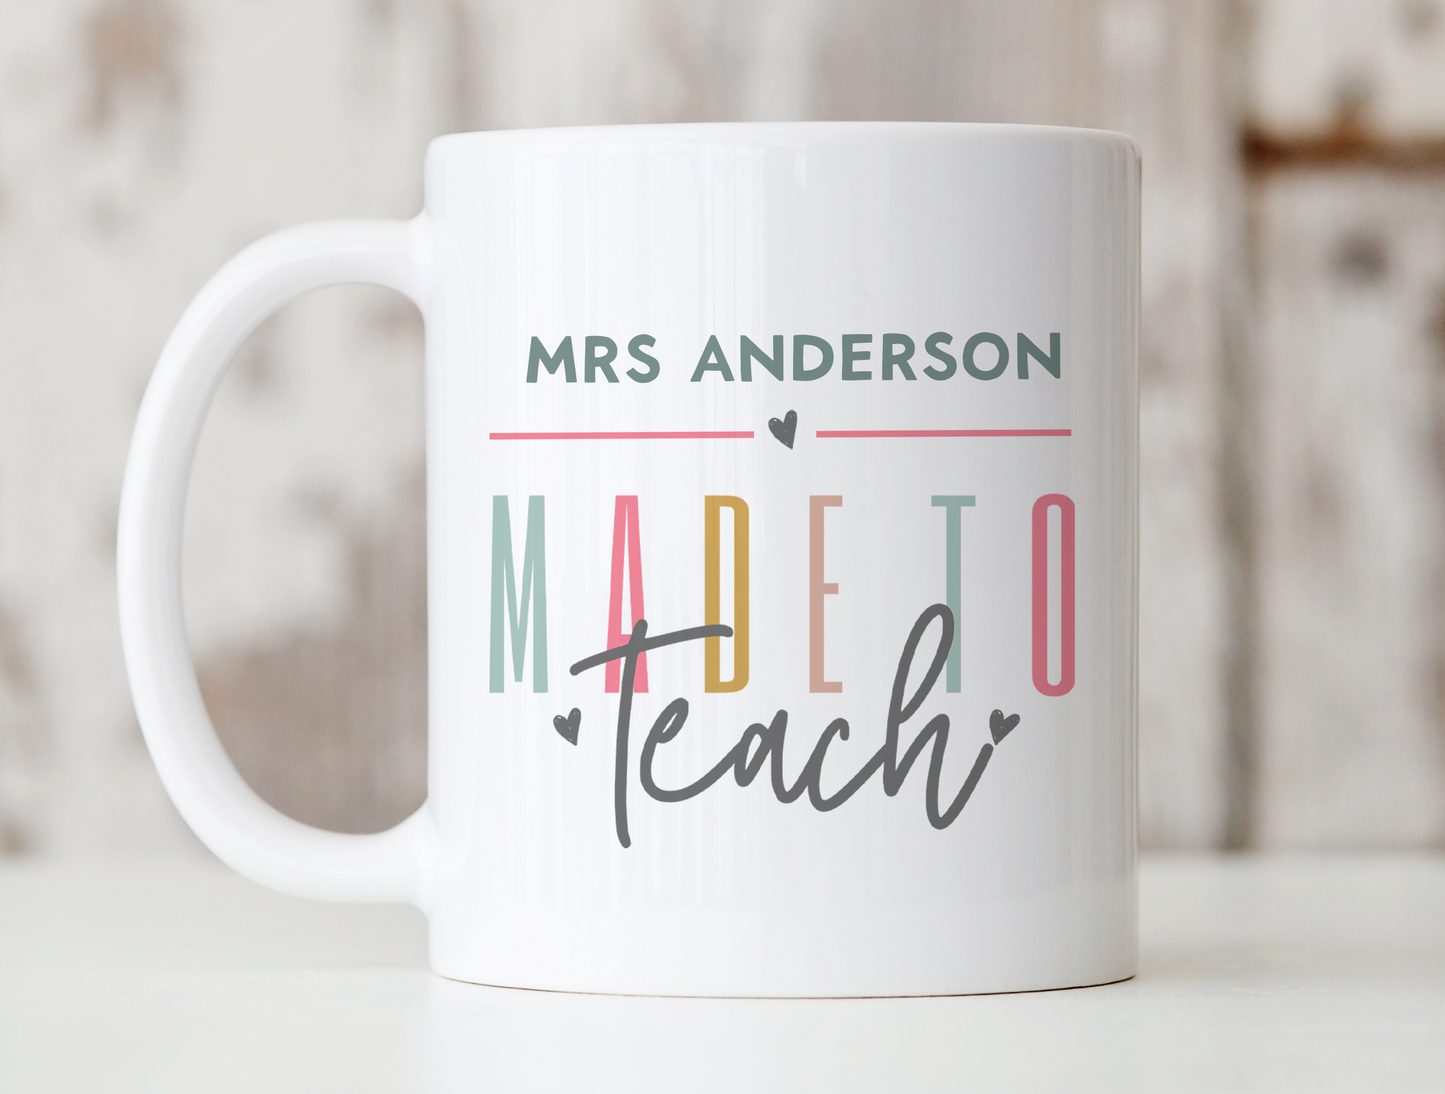 Made To Teach Mug